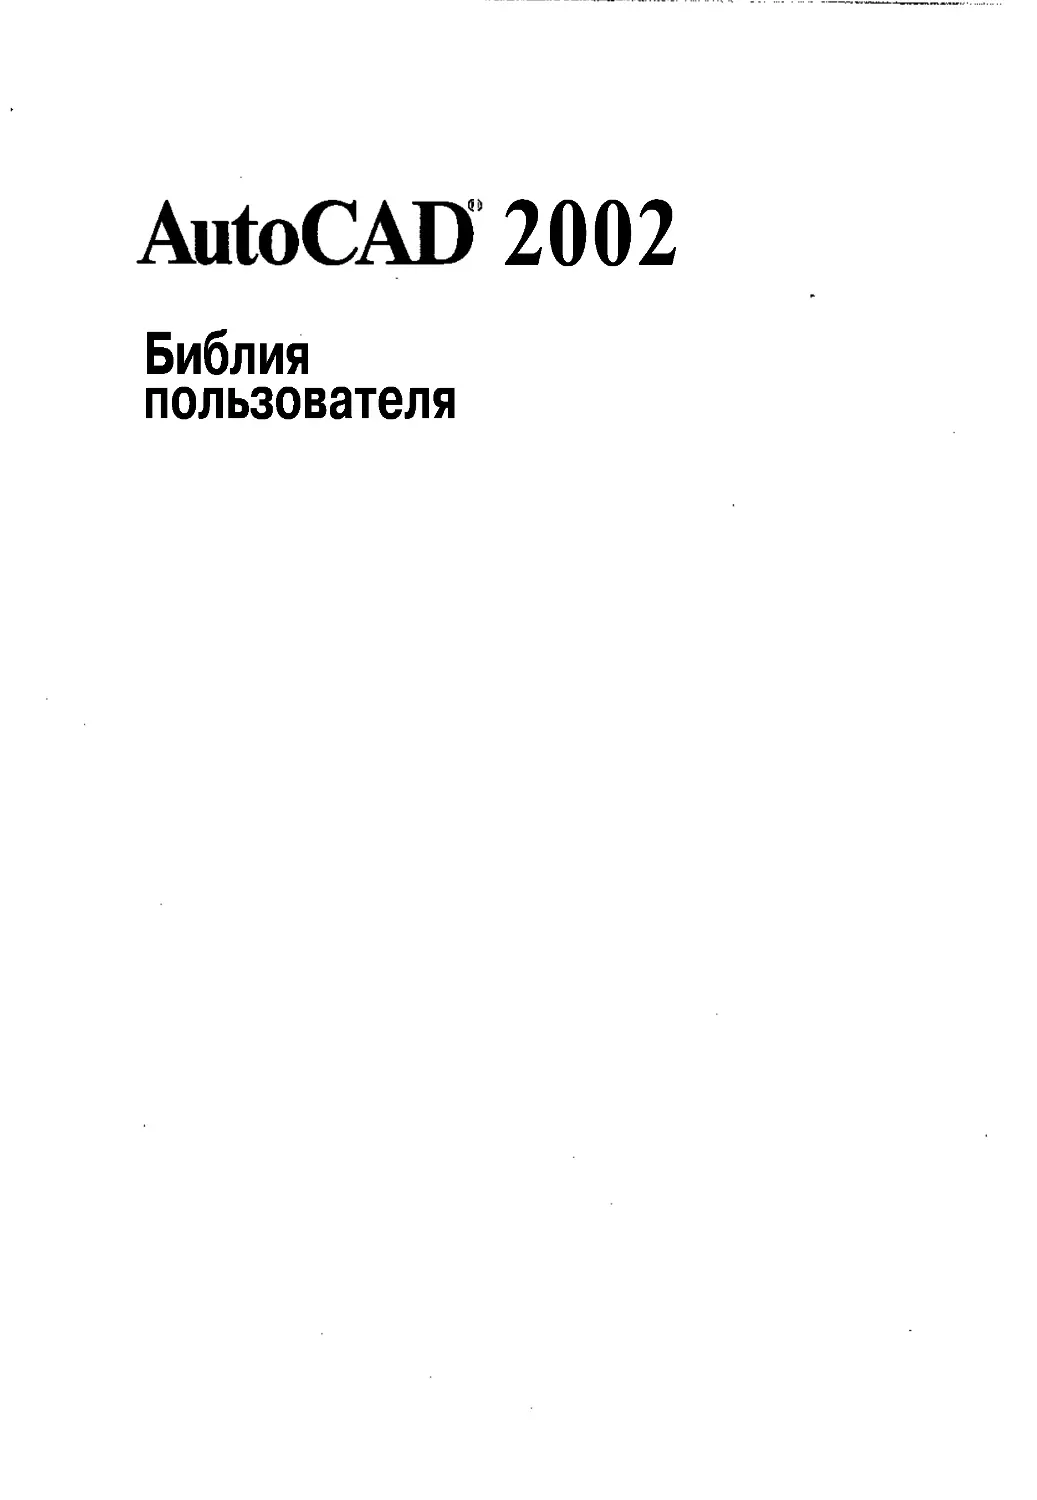 AutoCAD 2002 Библия пользователя